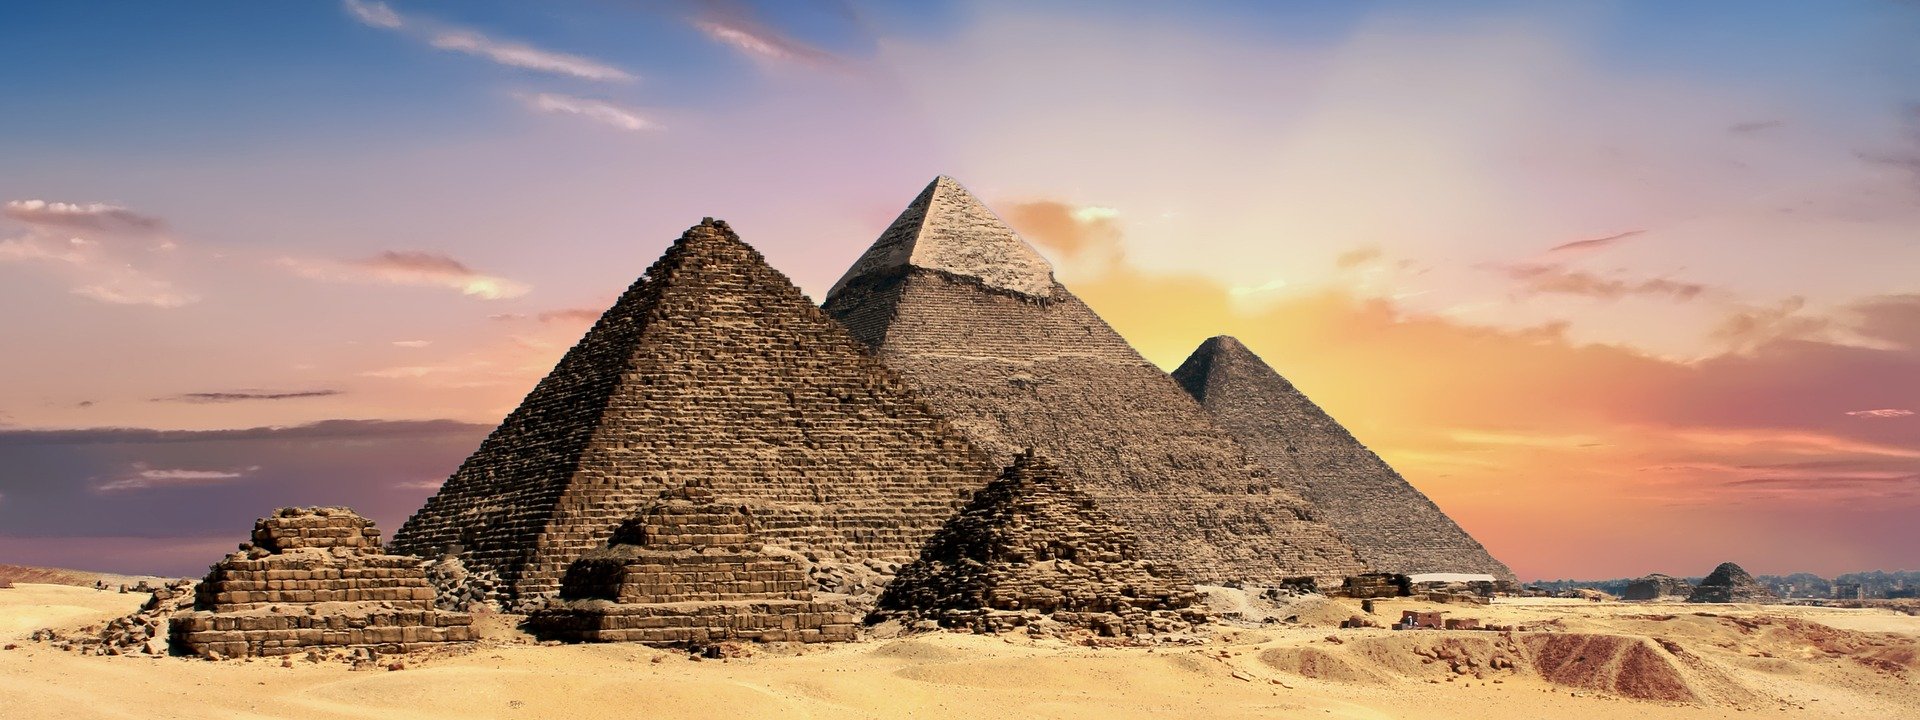 Достопримечательности Египта любимые туристами